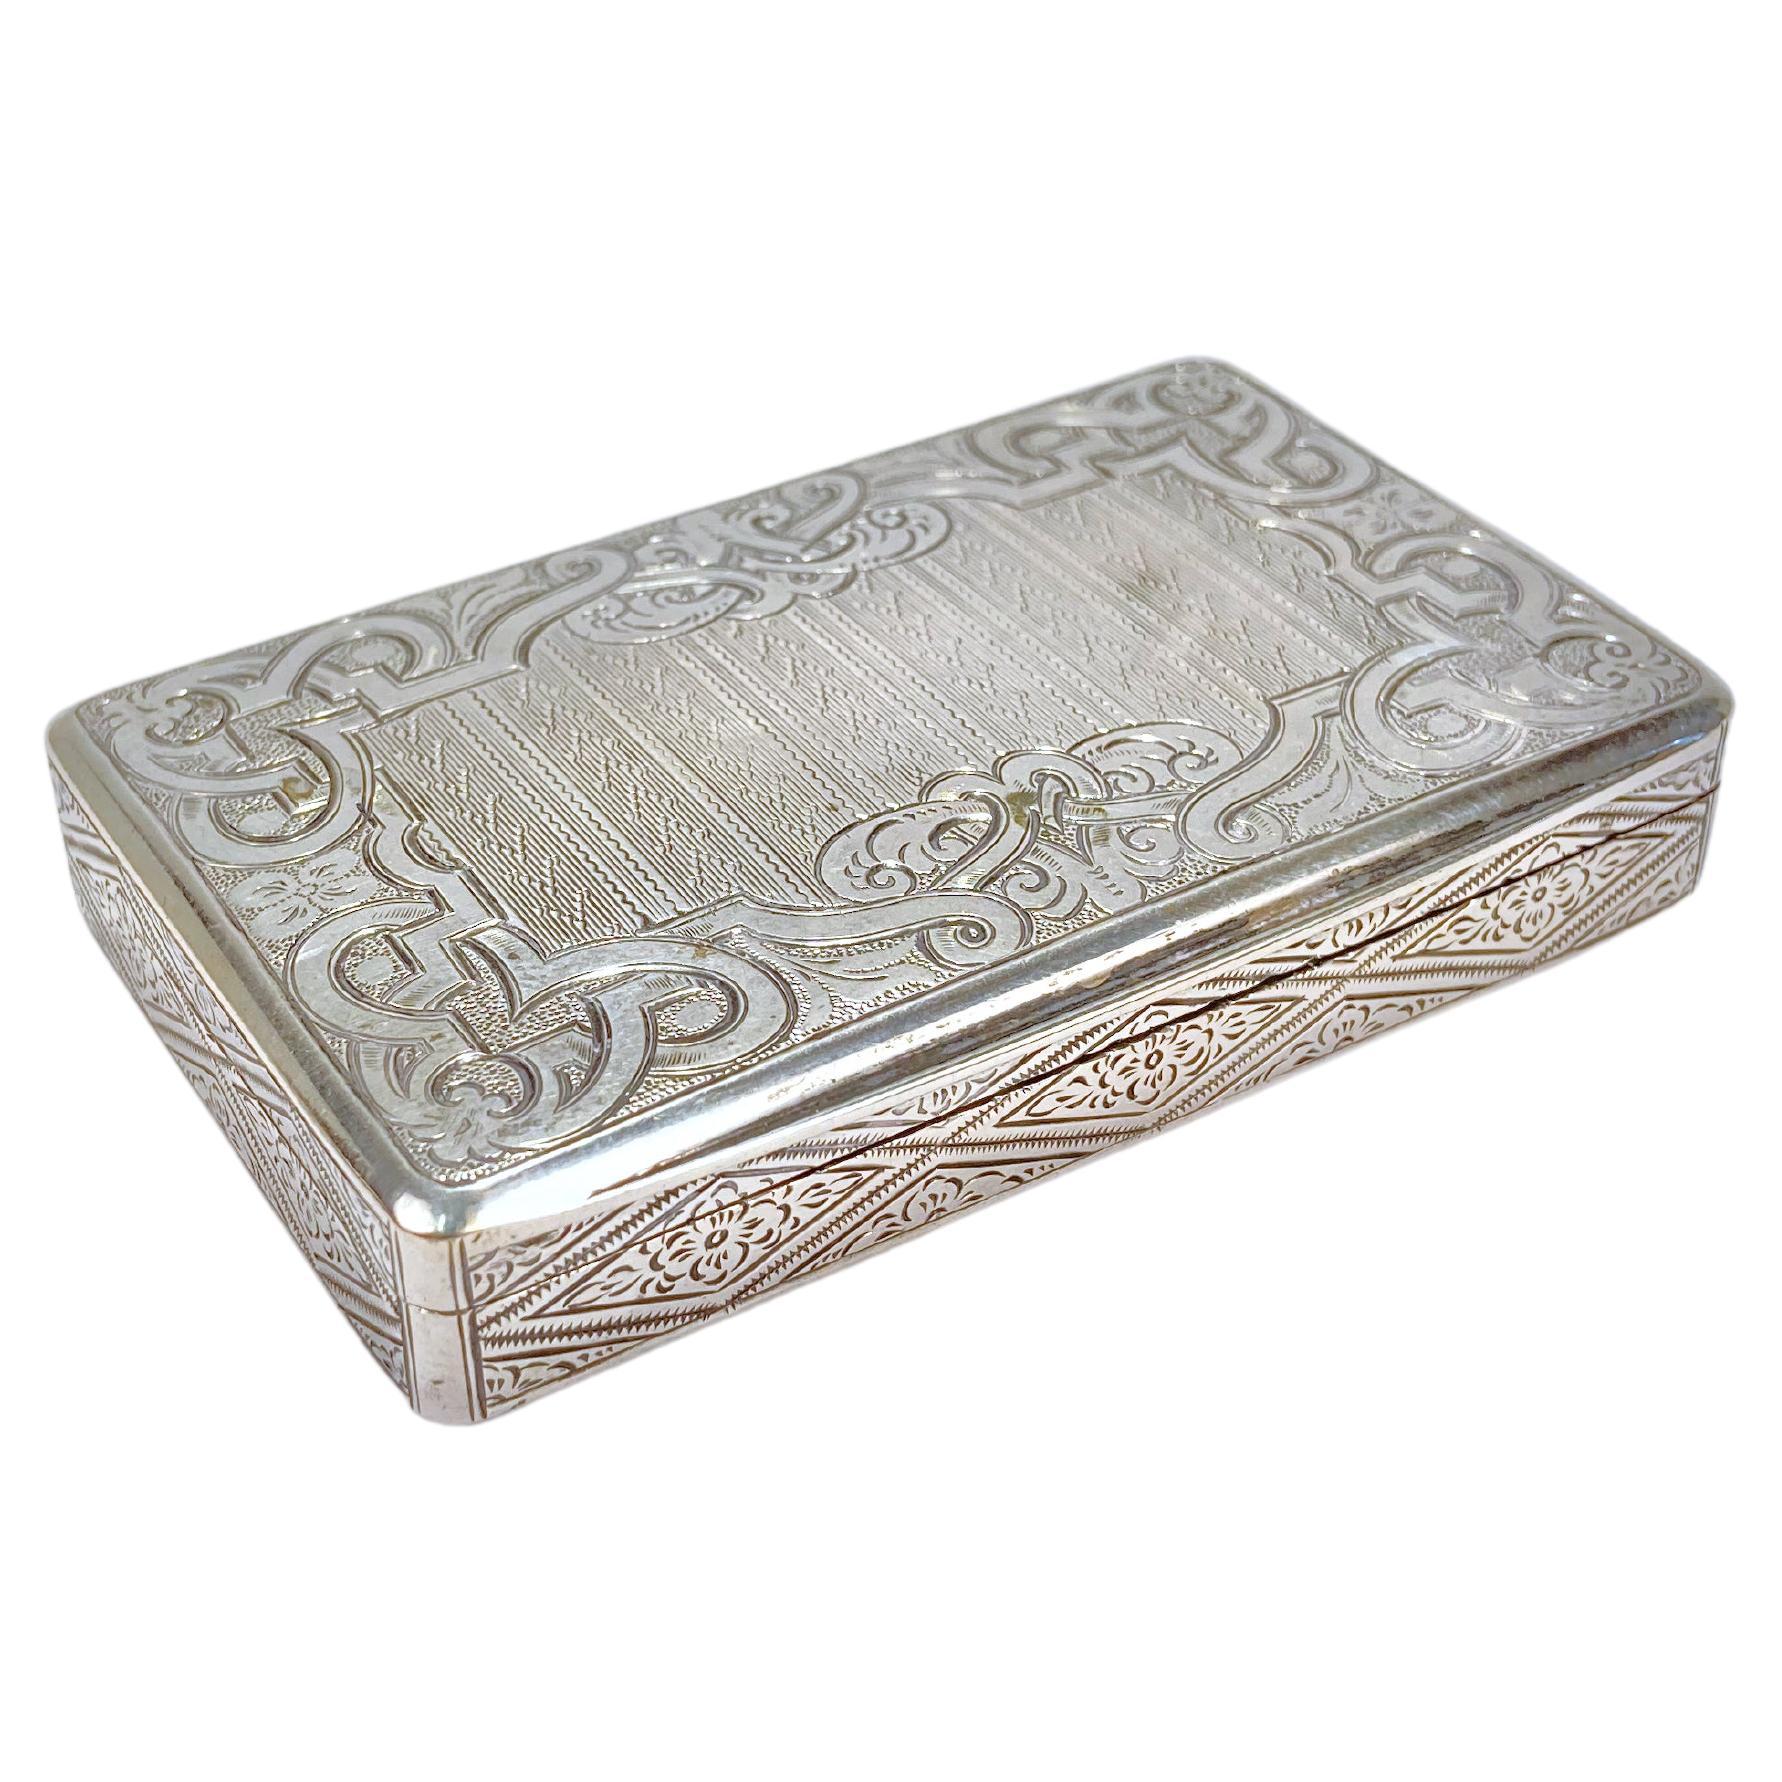 Antikes Wiener oder österreichisches, gedrechseltes Kartenetui oder Schnupftabakdose aus Silber